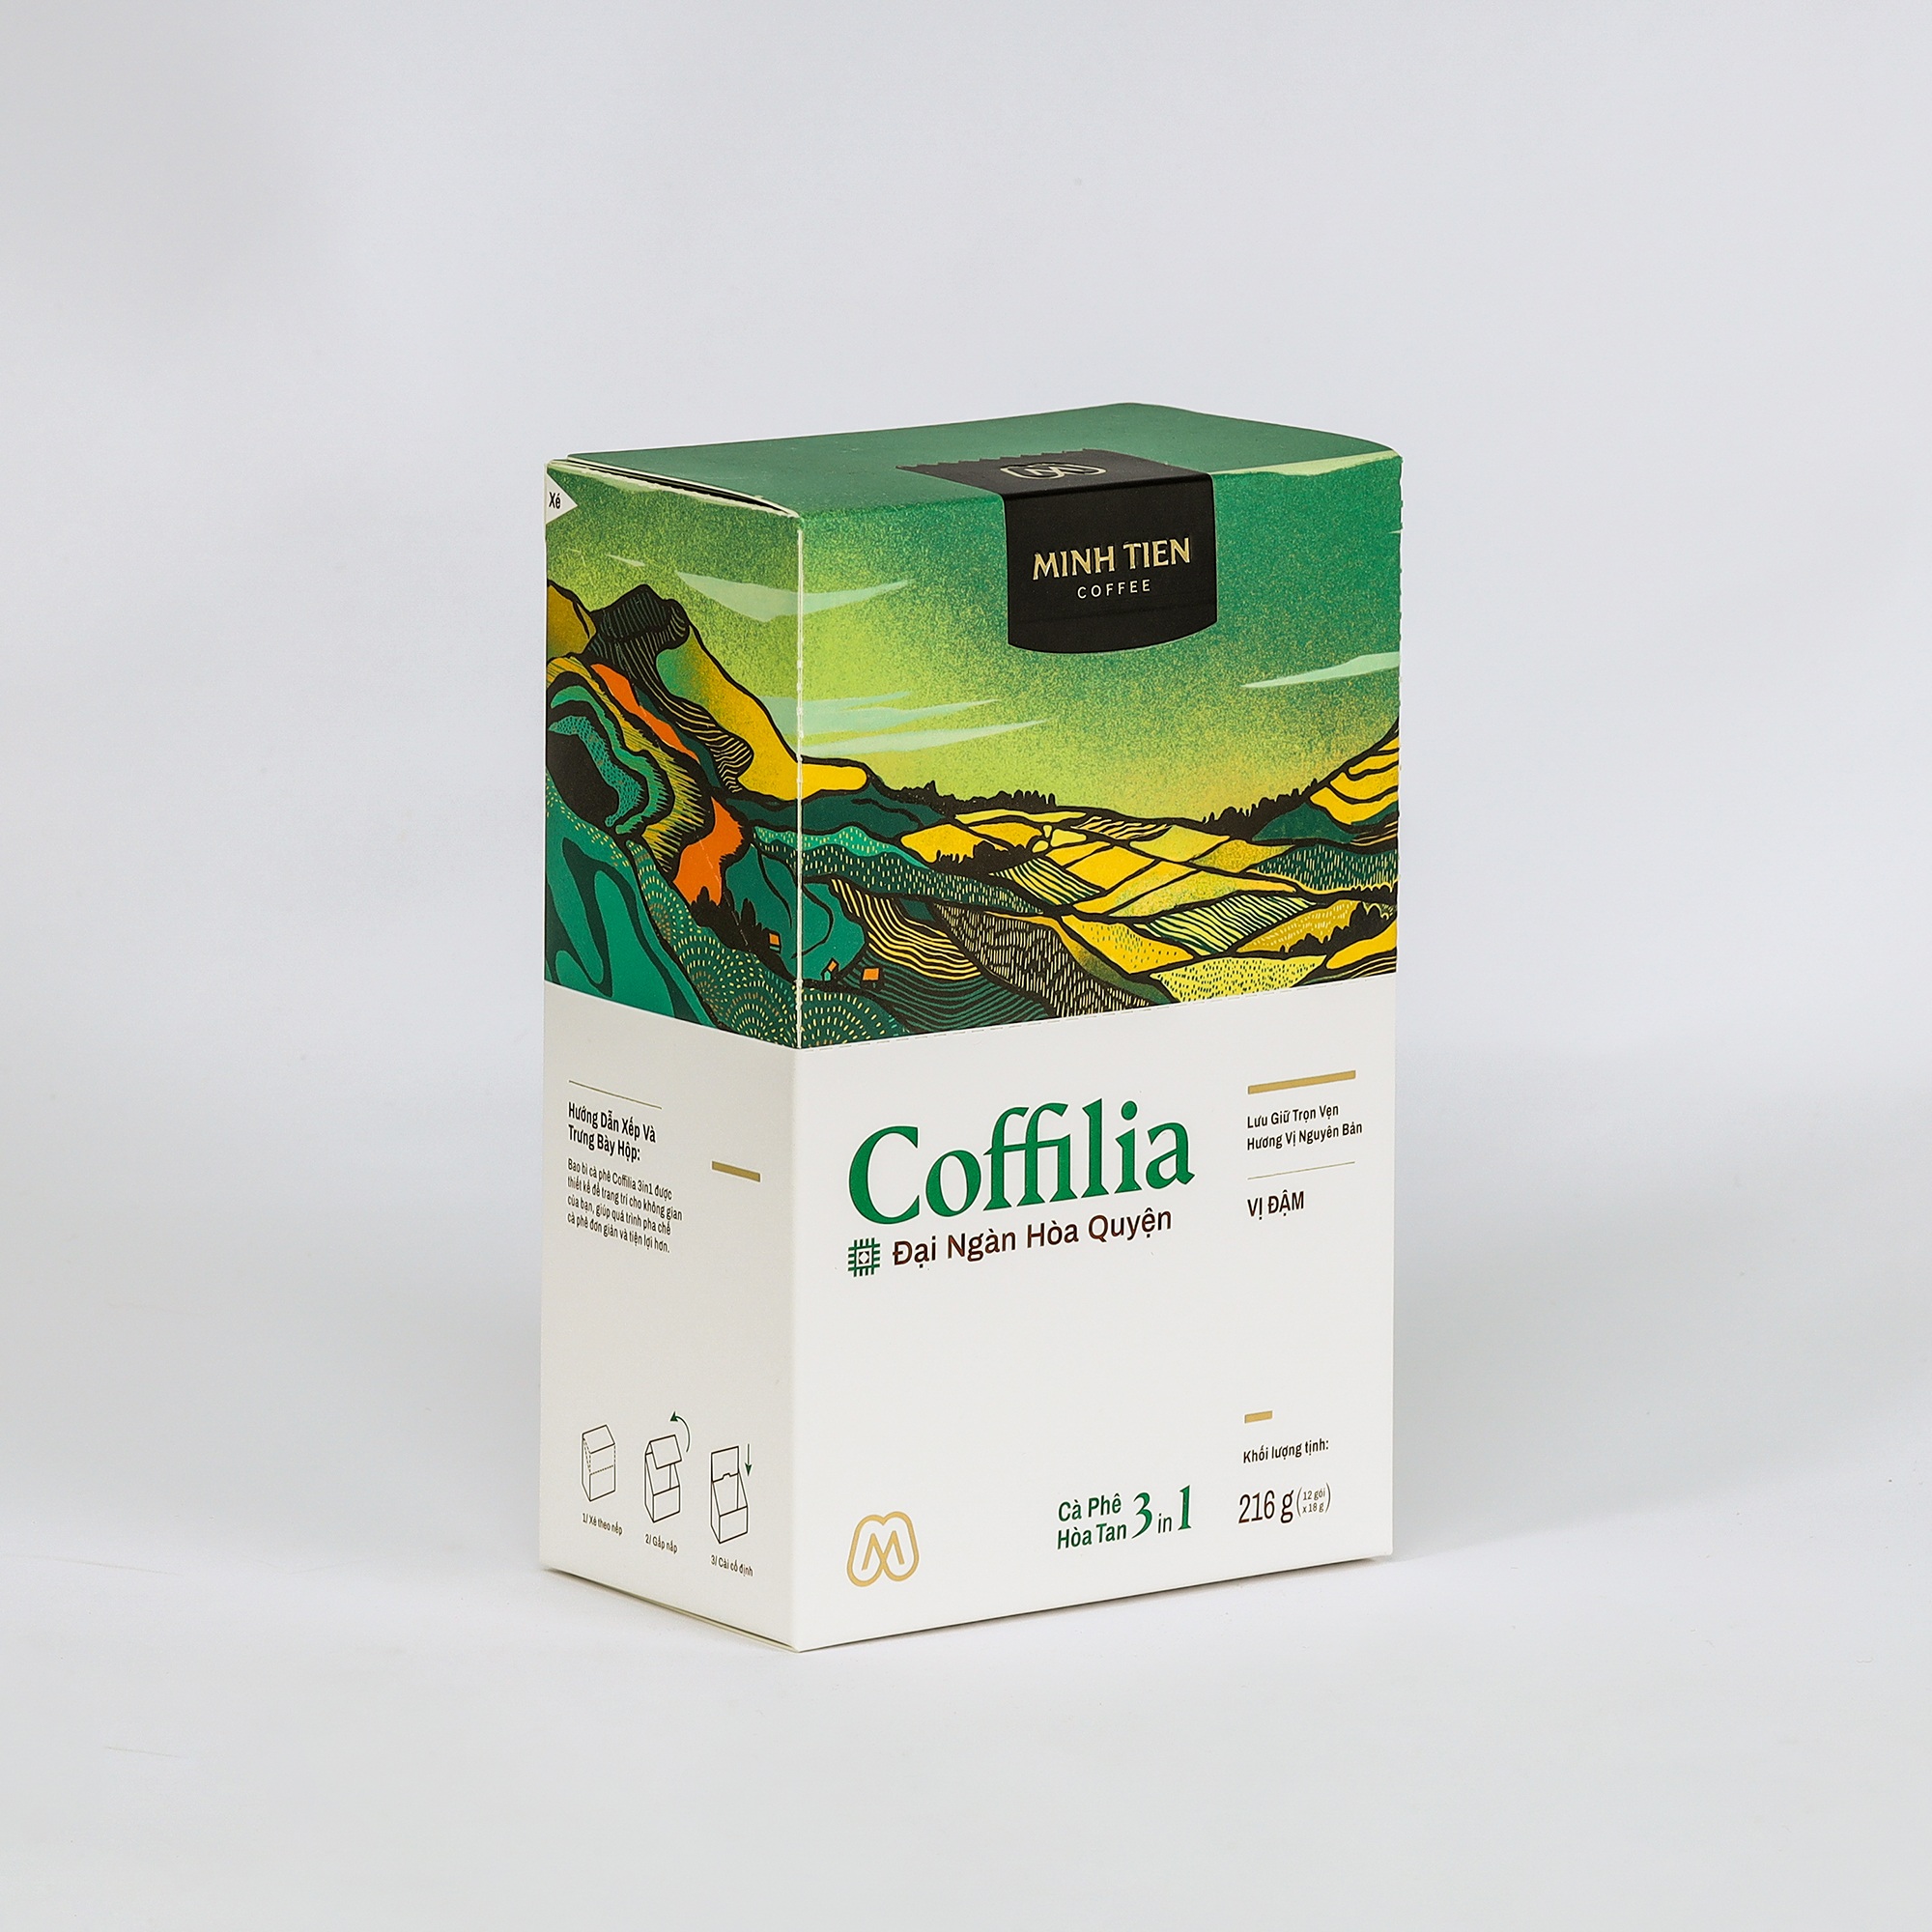 Hình ảnh Cà phê hòa tan 3in1 - Sạch nguyên bản - Coffilia - Đại ngàn hòa quyện (12 gói)